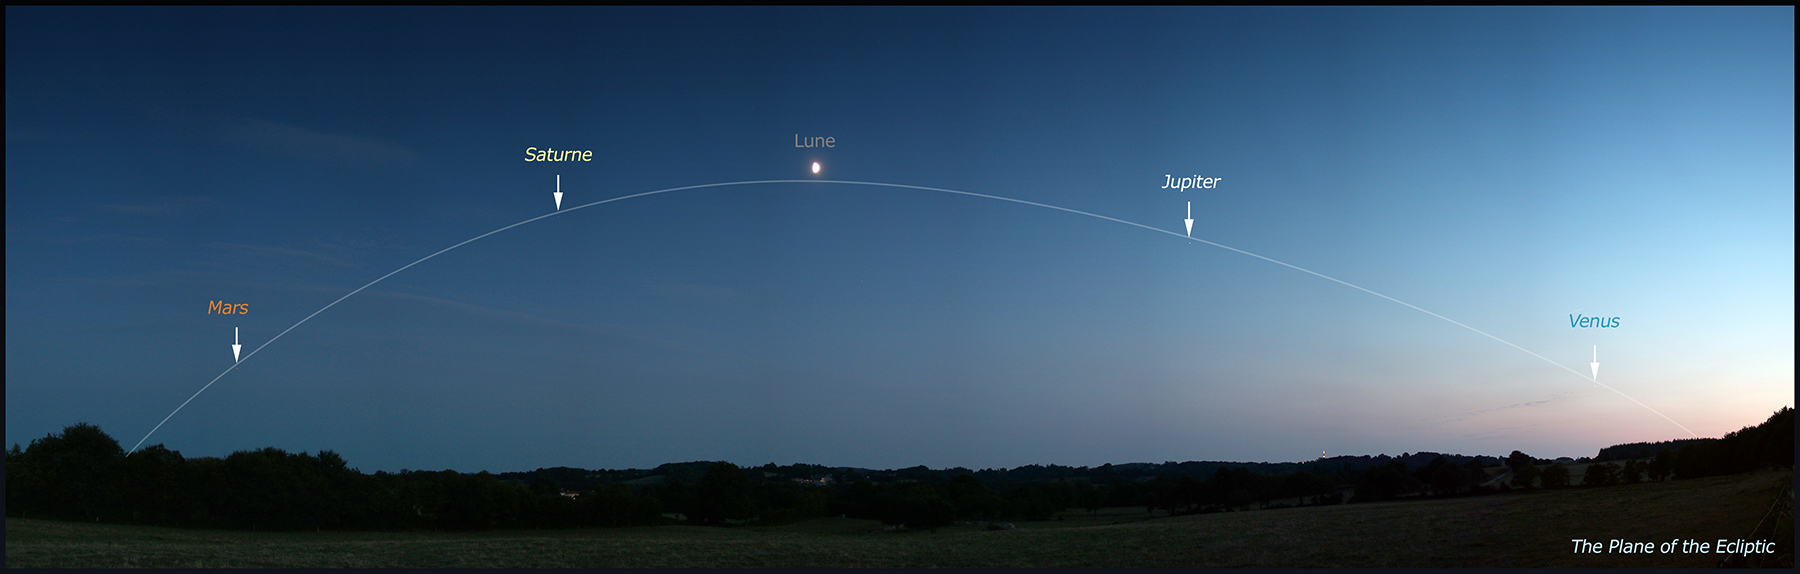 L'Ecliptique le 19/08/2018, 4 planètes visibles.